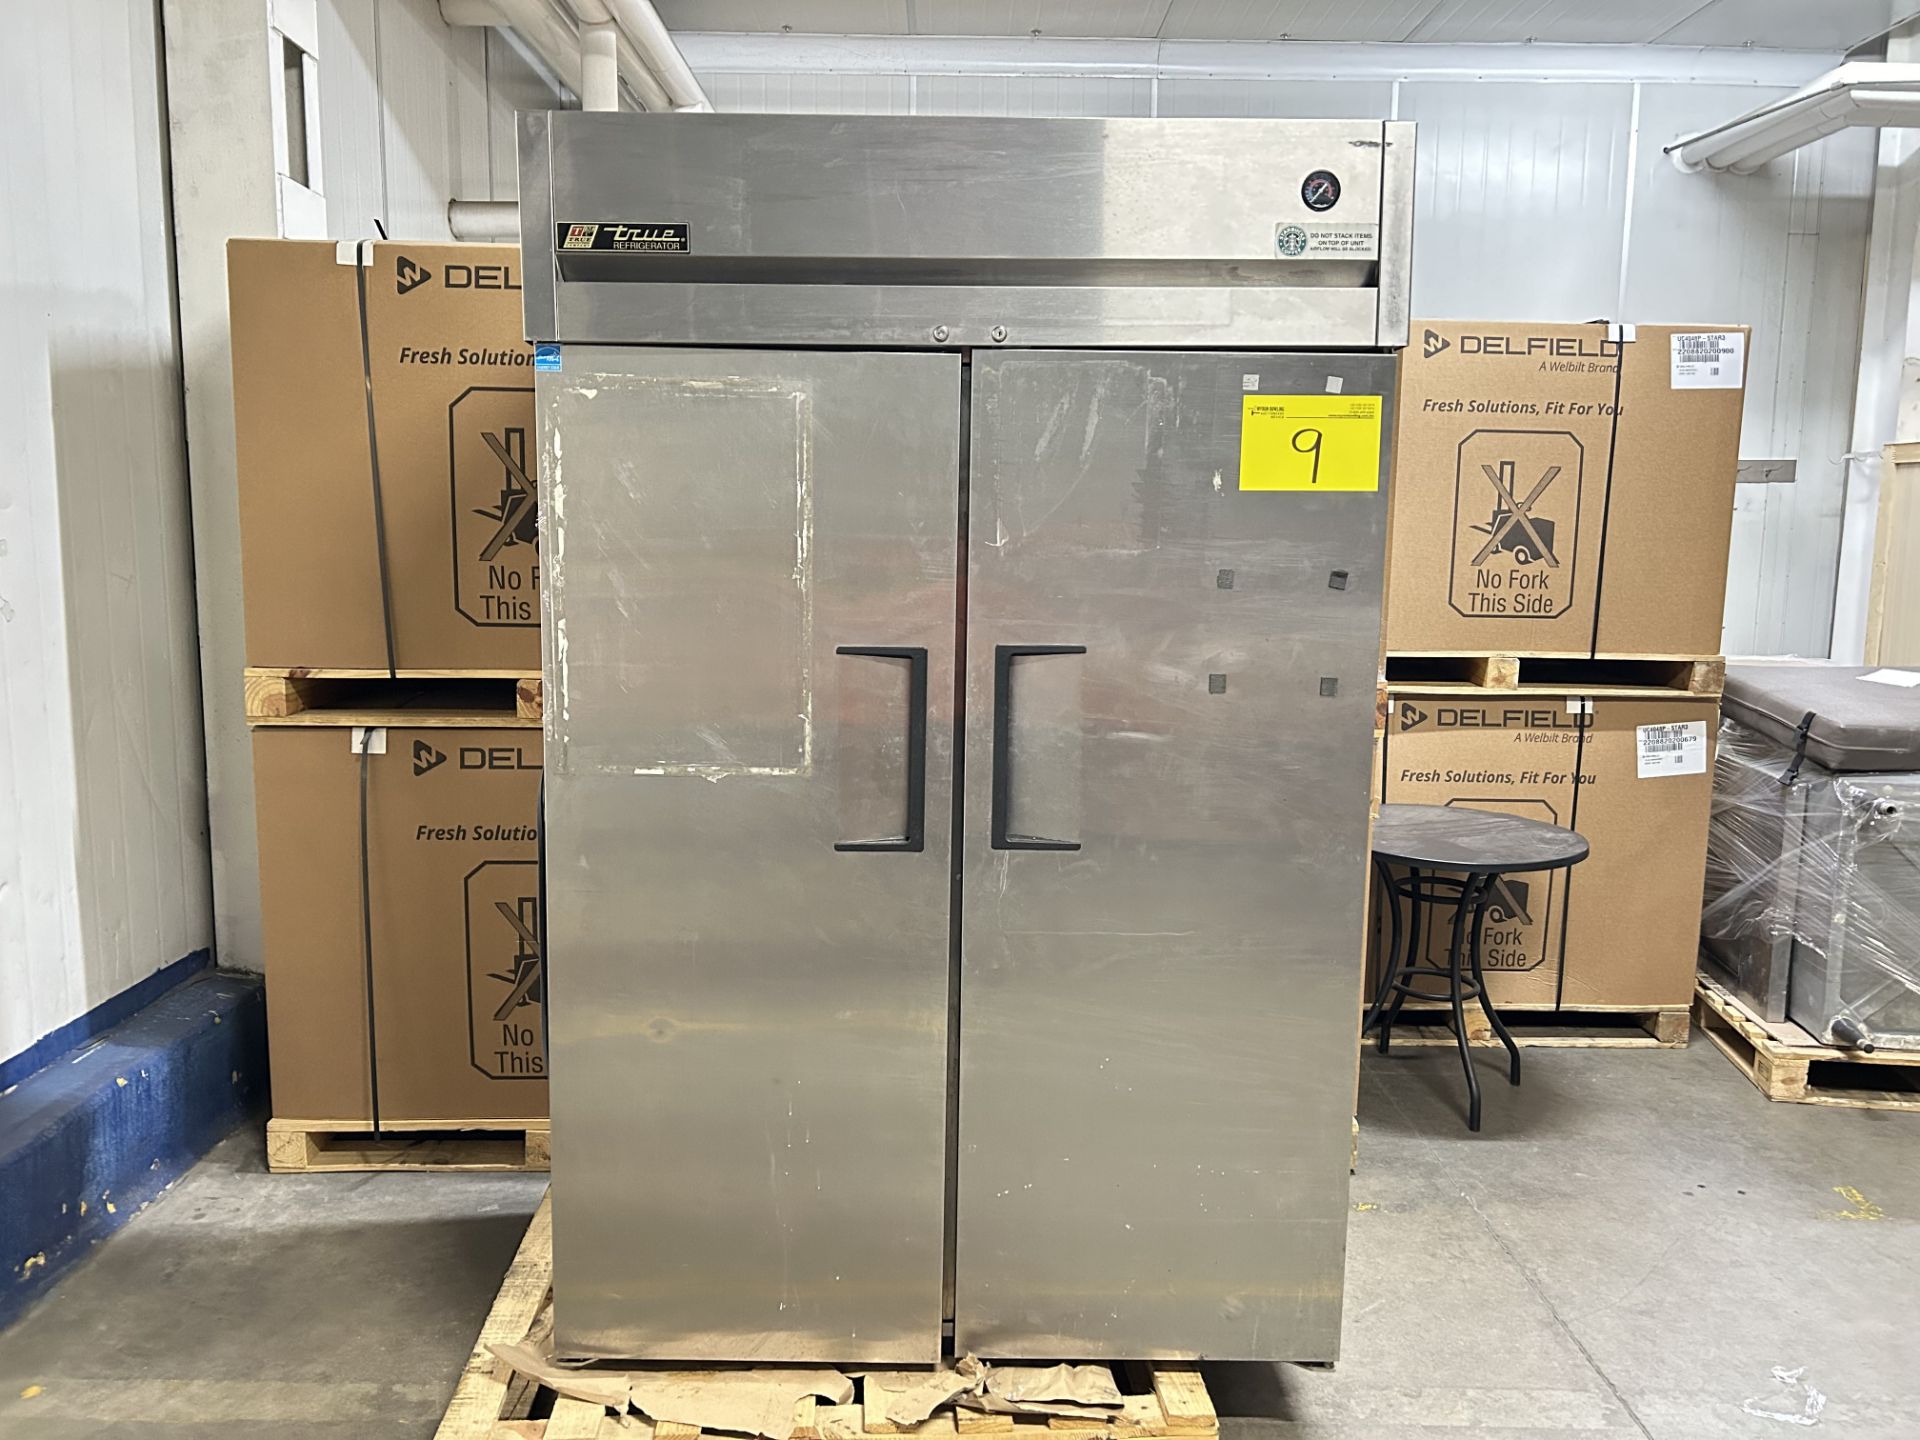 1 congelador vertical Marca true refrigerador, Modelo TG2R-2S, Serie 7661392, Medidas 195cmX88cm127